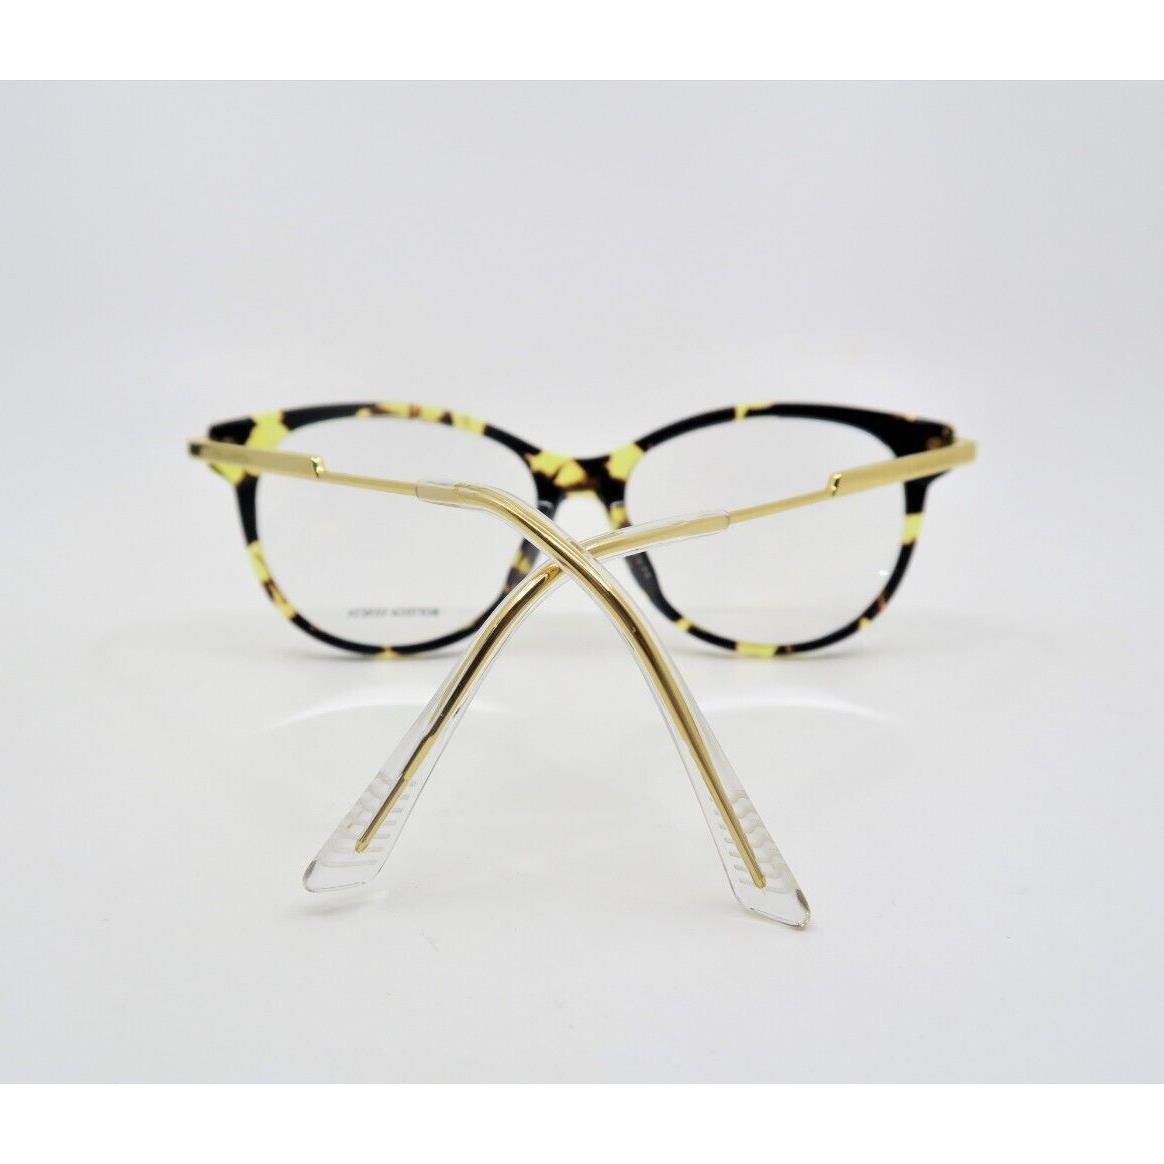 Bottega Veneta eyeglasses  - Brown Tortoise , Brown Tortoise Frame